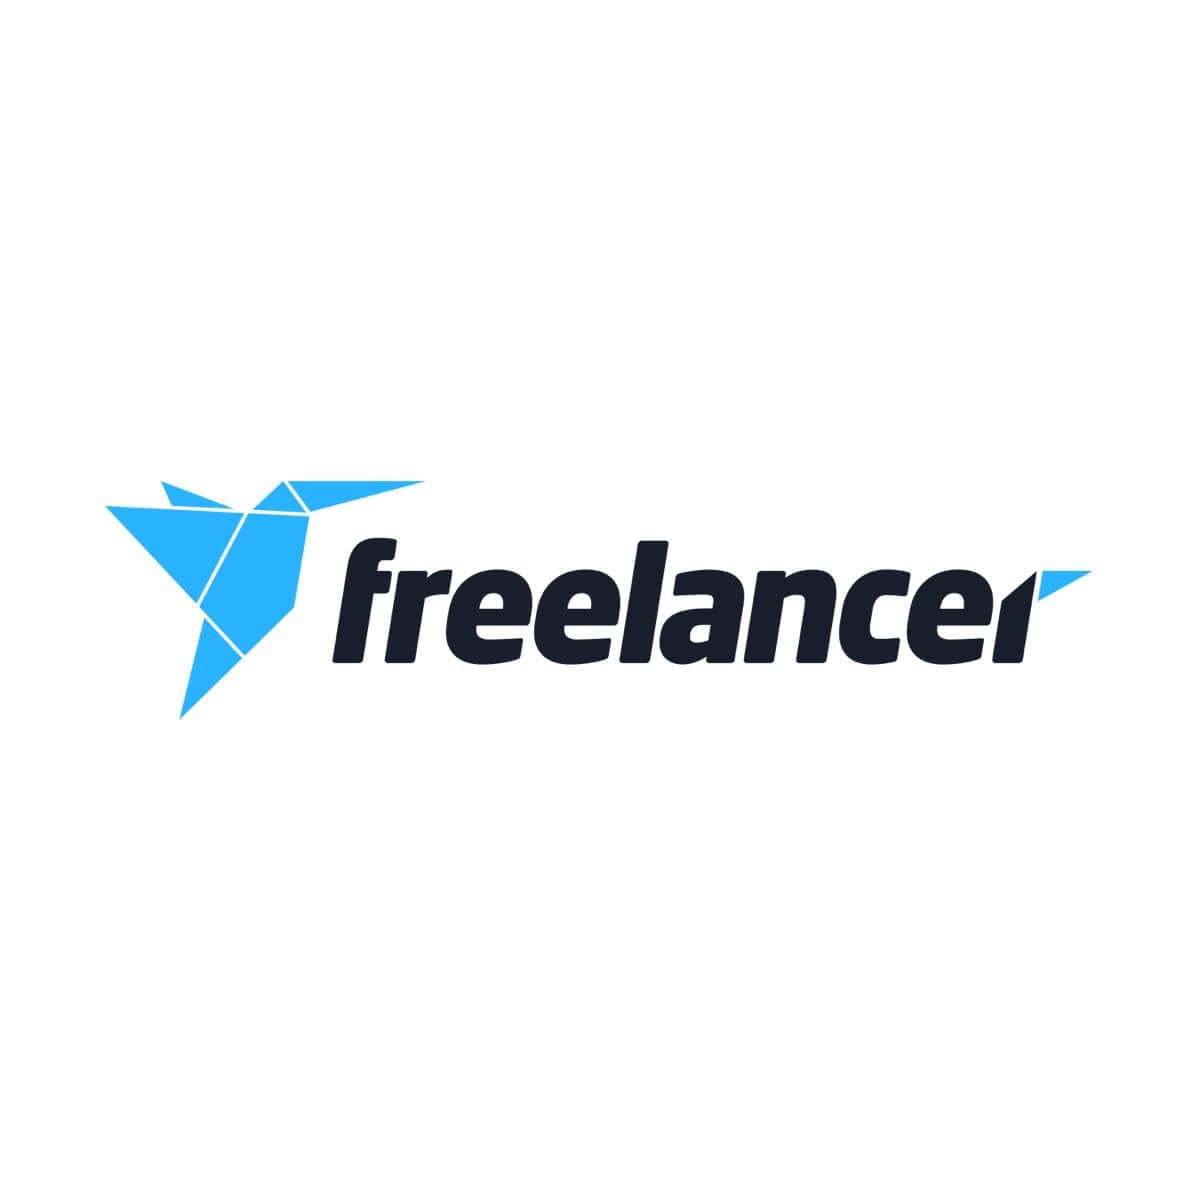 bescome a freelancer